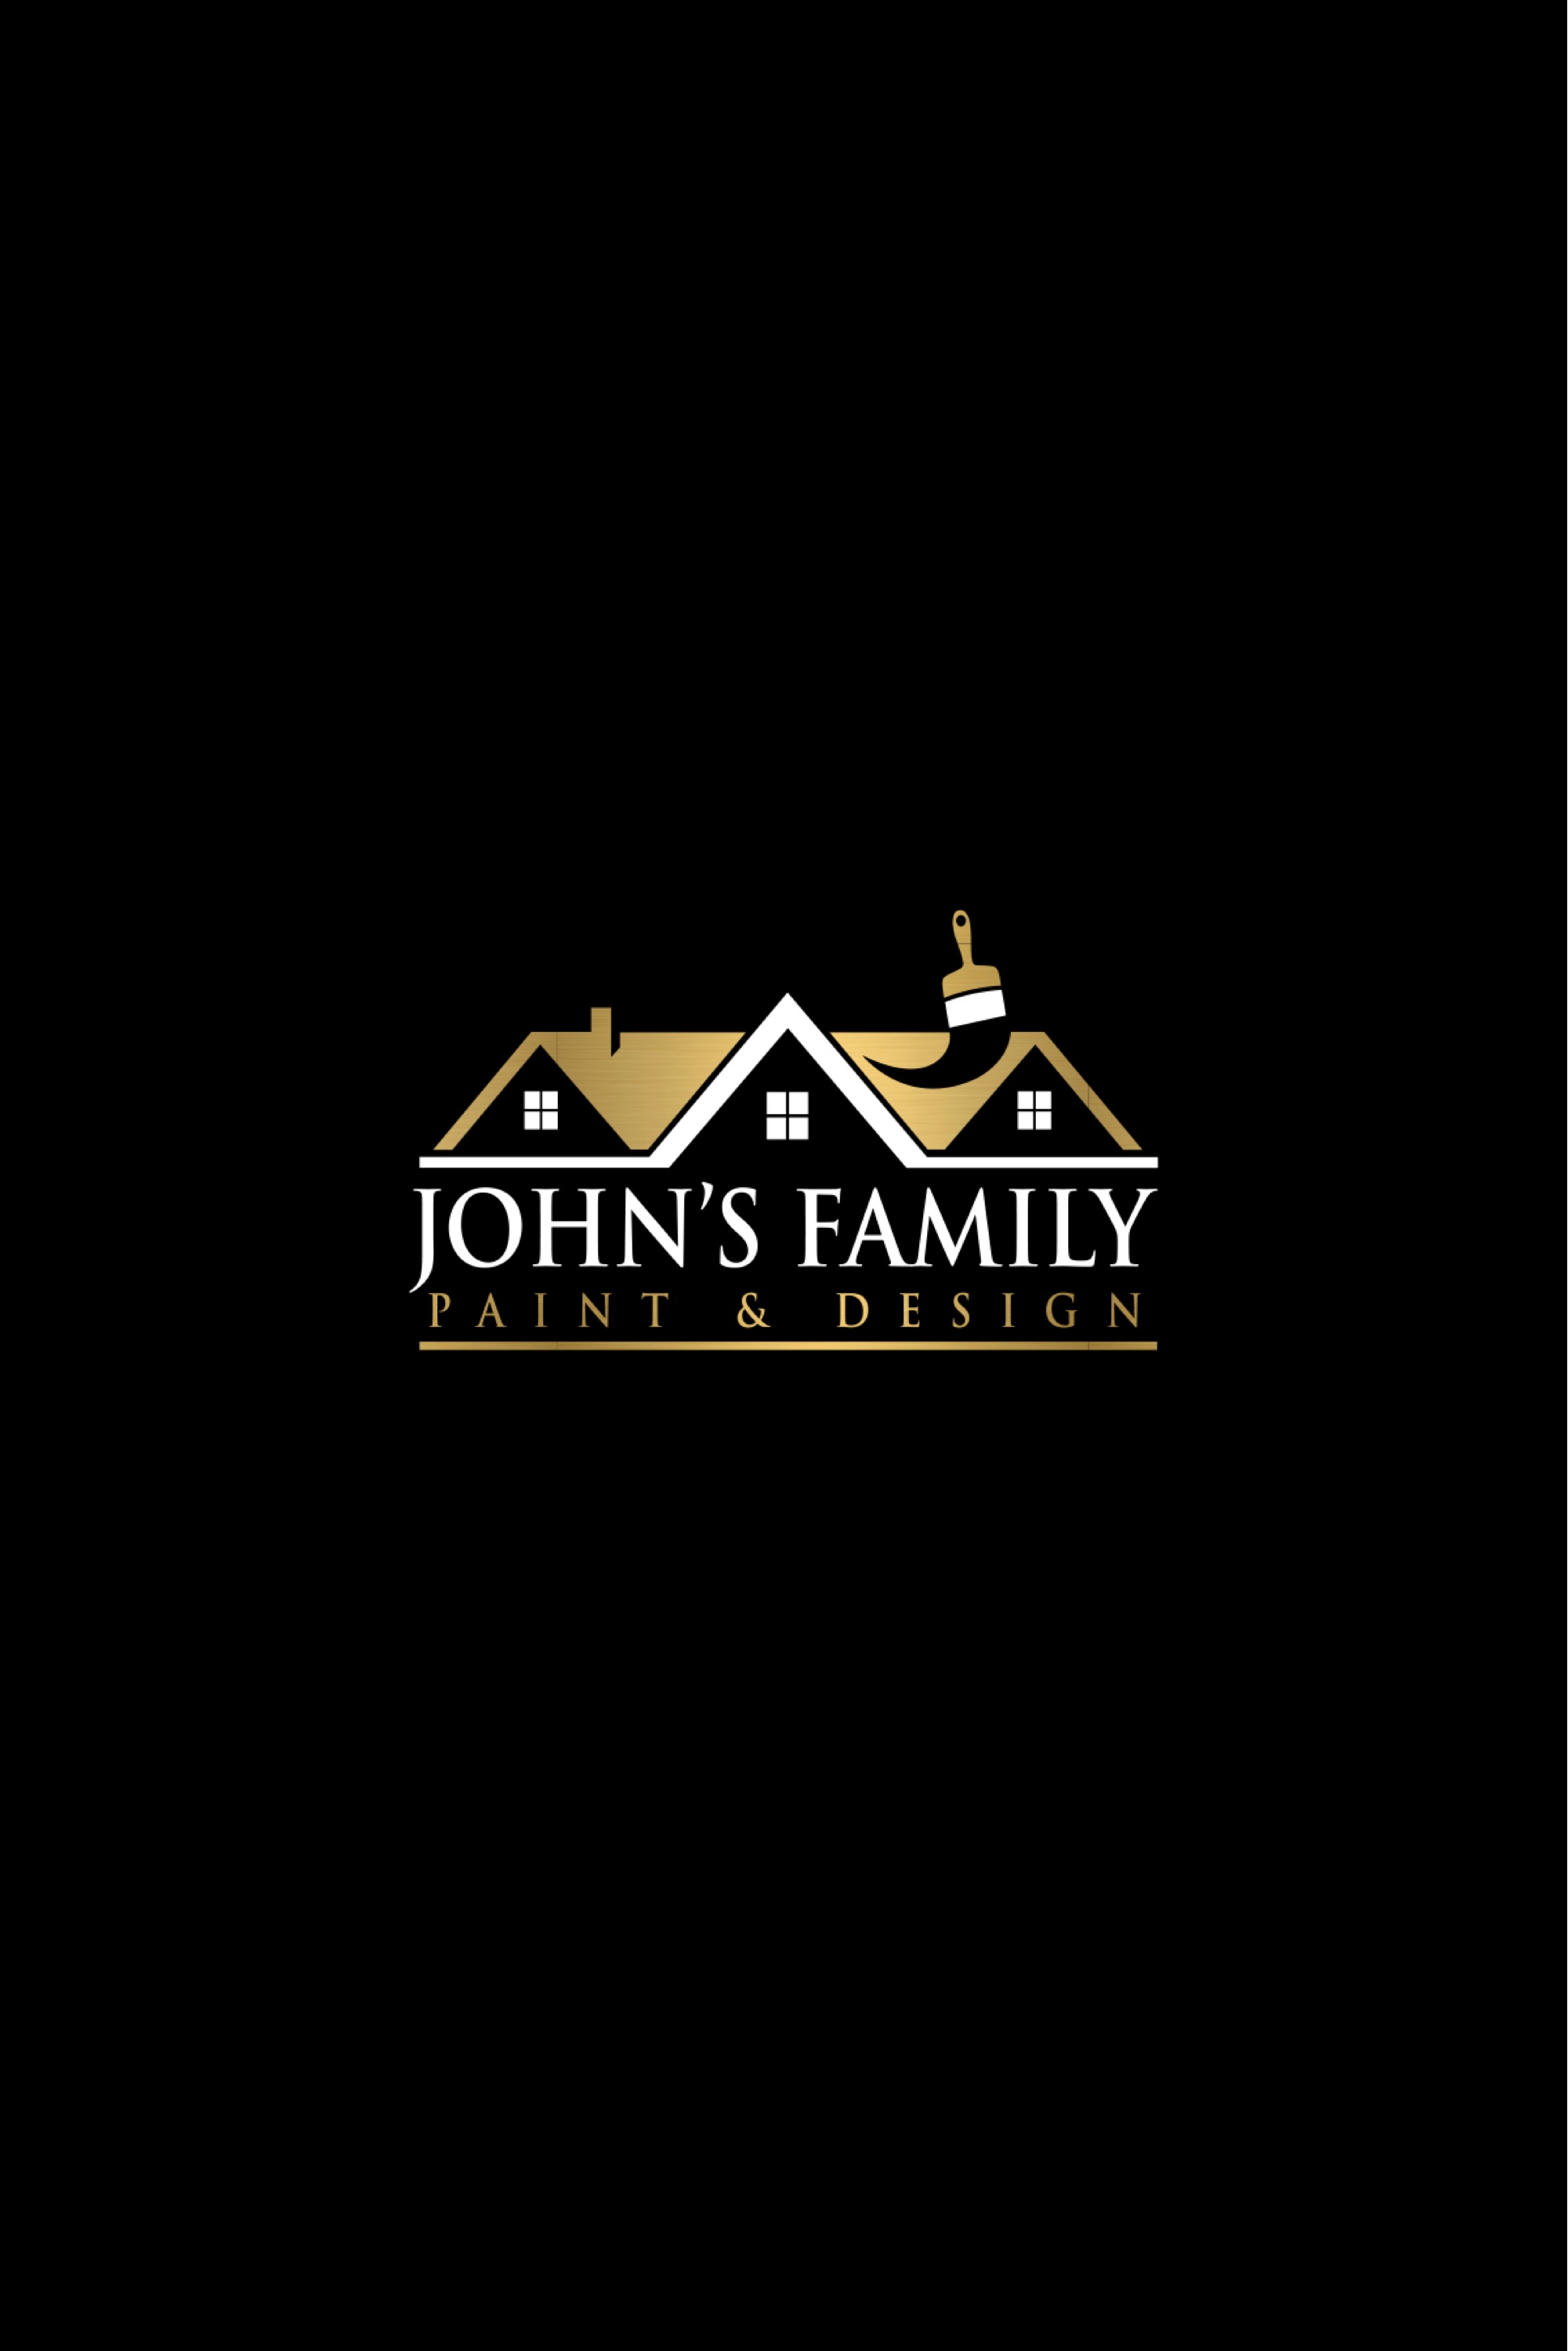 John's Family Paint & Design Logo